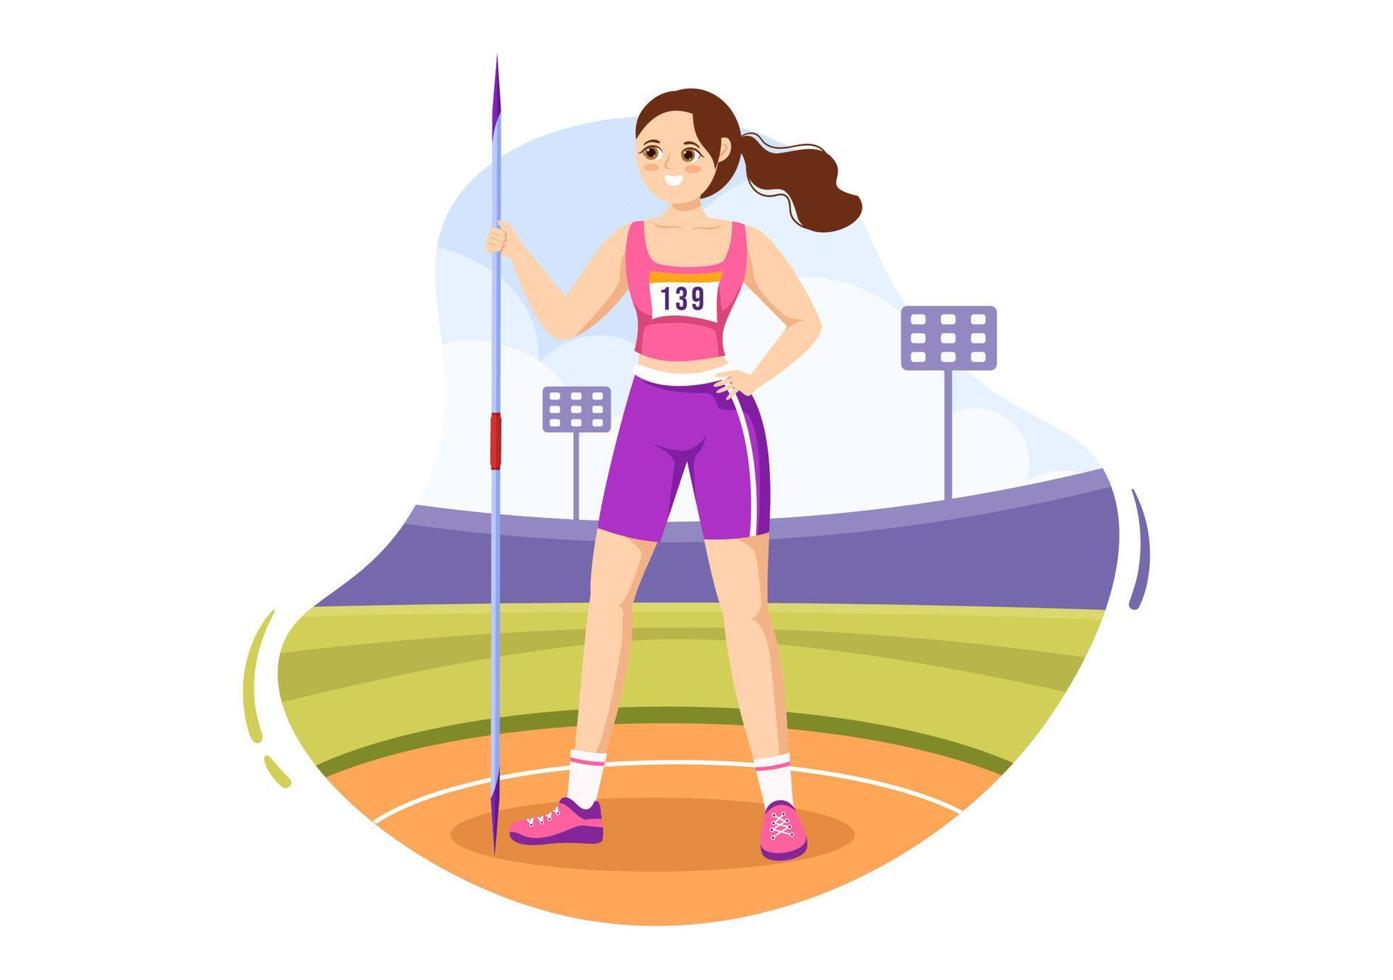 spjut kasta idrottare illustration använder sig av en lång lans formad verktyg till kasta i sporter aktivitet platt tecknad serie hand dragen mall vektor